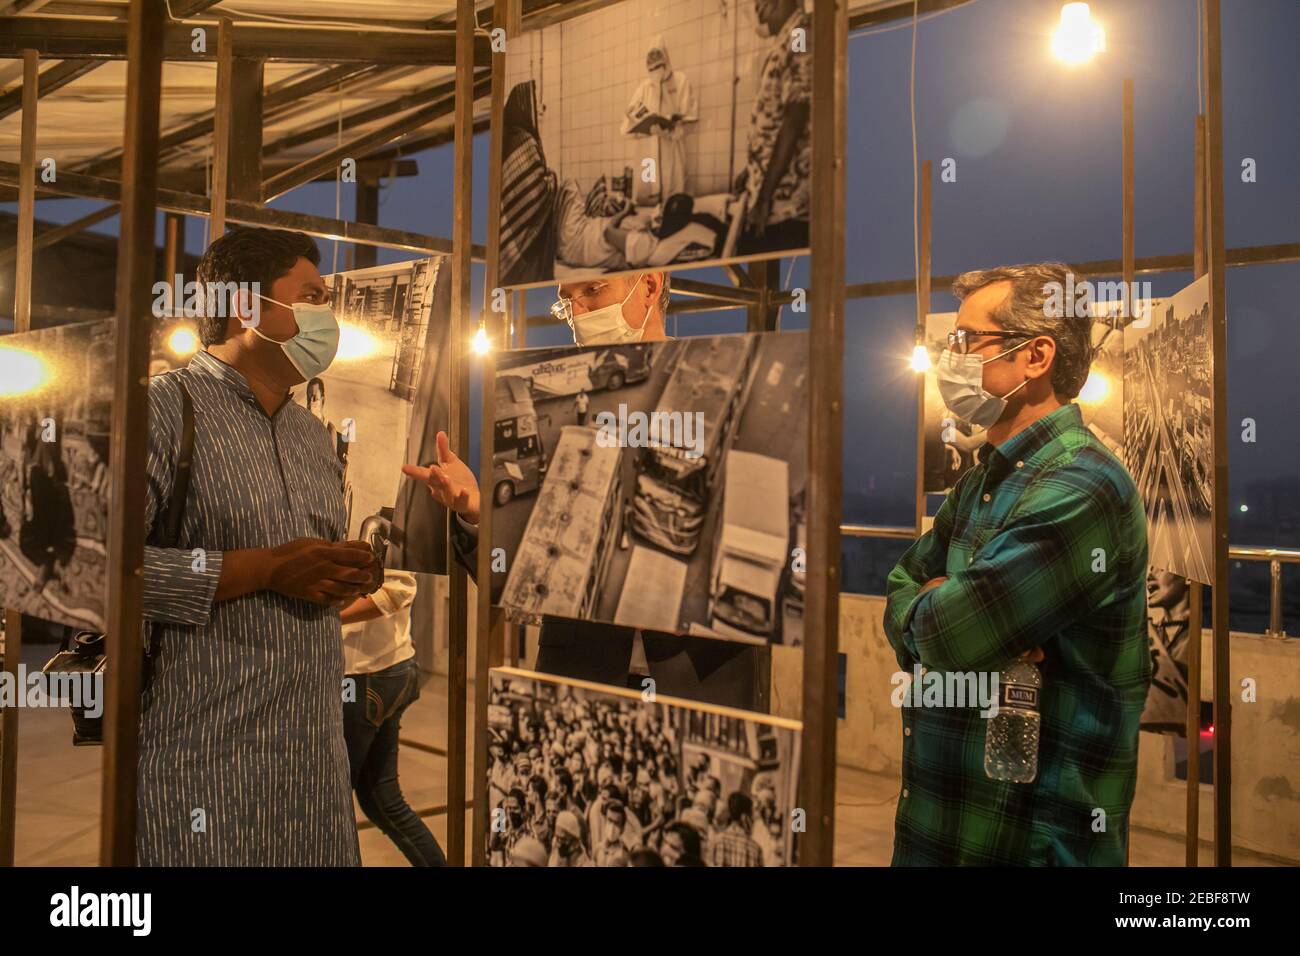 Direttore del Festival, ASM Rezaur Rahman (R) con Mahmud Hossain Opu (ospite L) e ospite visto durante l'inaugurazione del festival delle mostre Chobi Mela, cui hanno partecipato fotografi e una discussione introduttiva sulle mostre della nuova galleria di Drik a Panthapath. Foto Stock